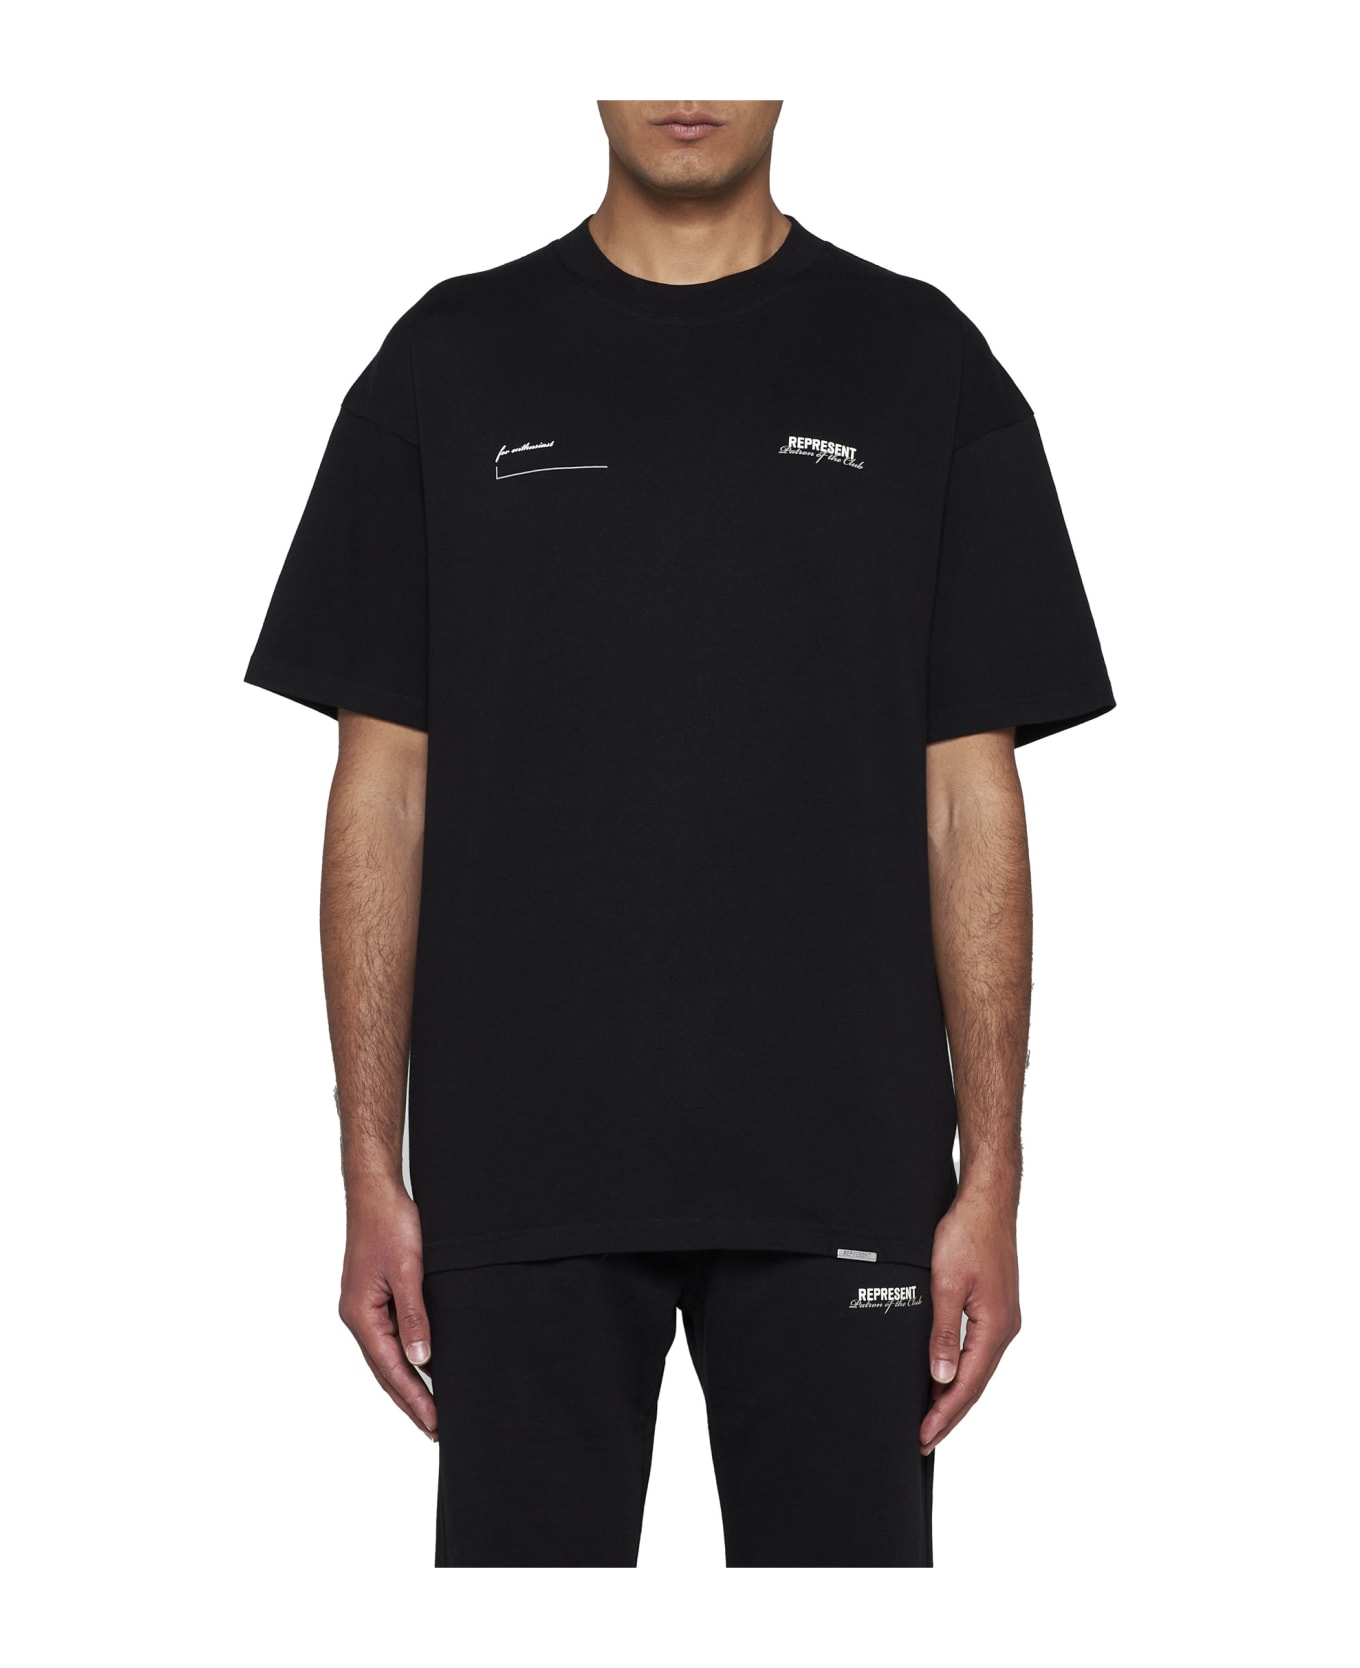 REPRESENT T-Shirt - Black